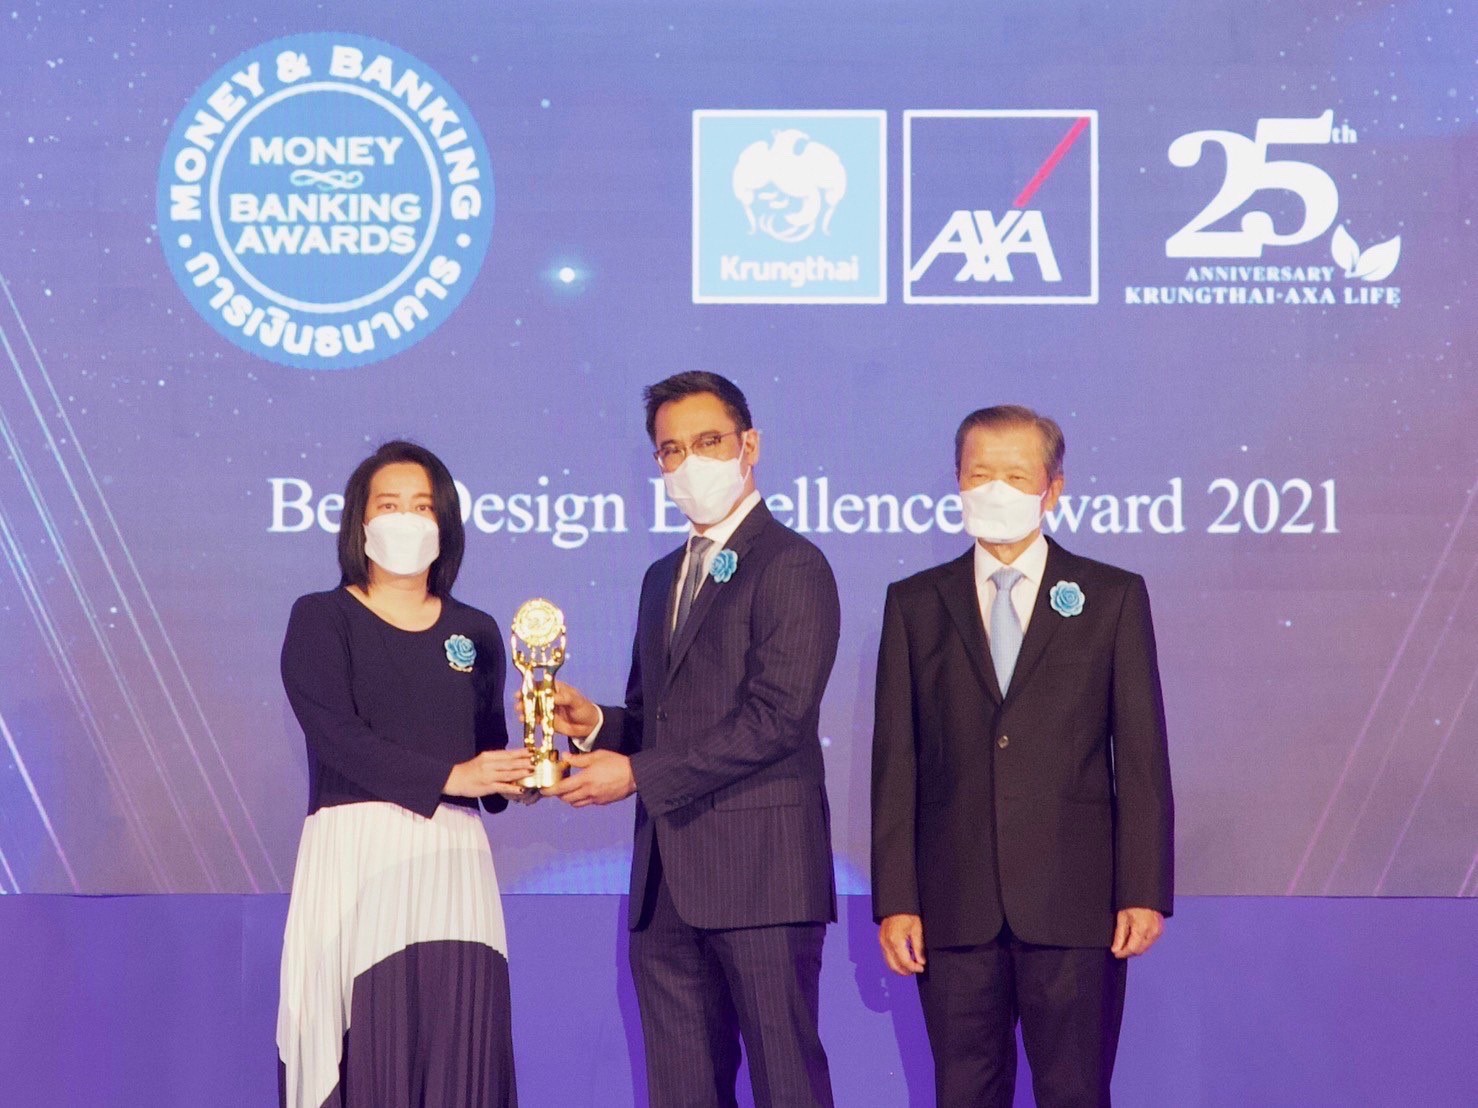 กรุงไทย–แอกซ่า ประกันชีวิต คว้ารางวัลบูธสวยงามยอดเยี่ยม ในงานมหกรรมการเงิน ครั้งที่ 21